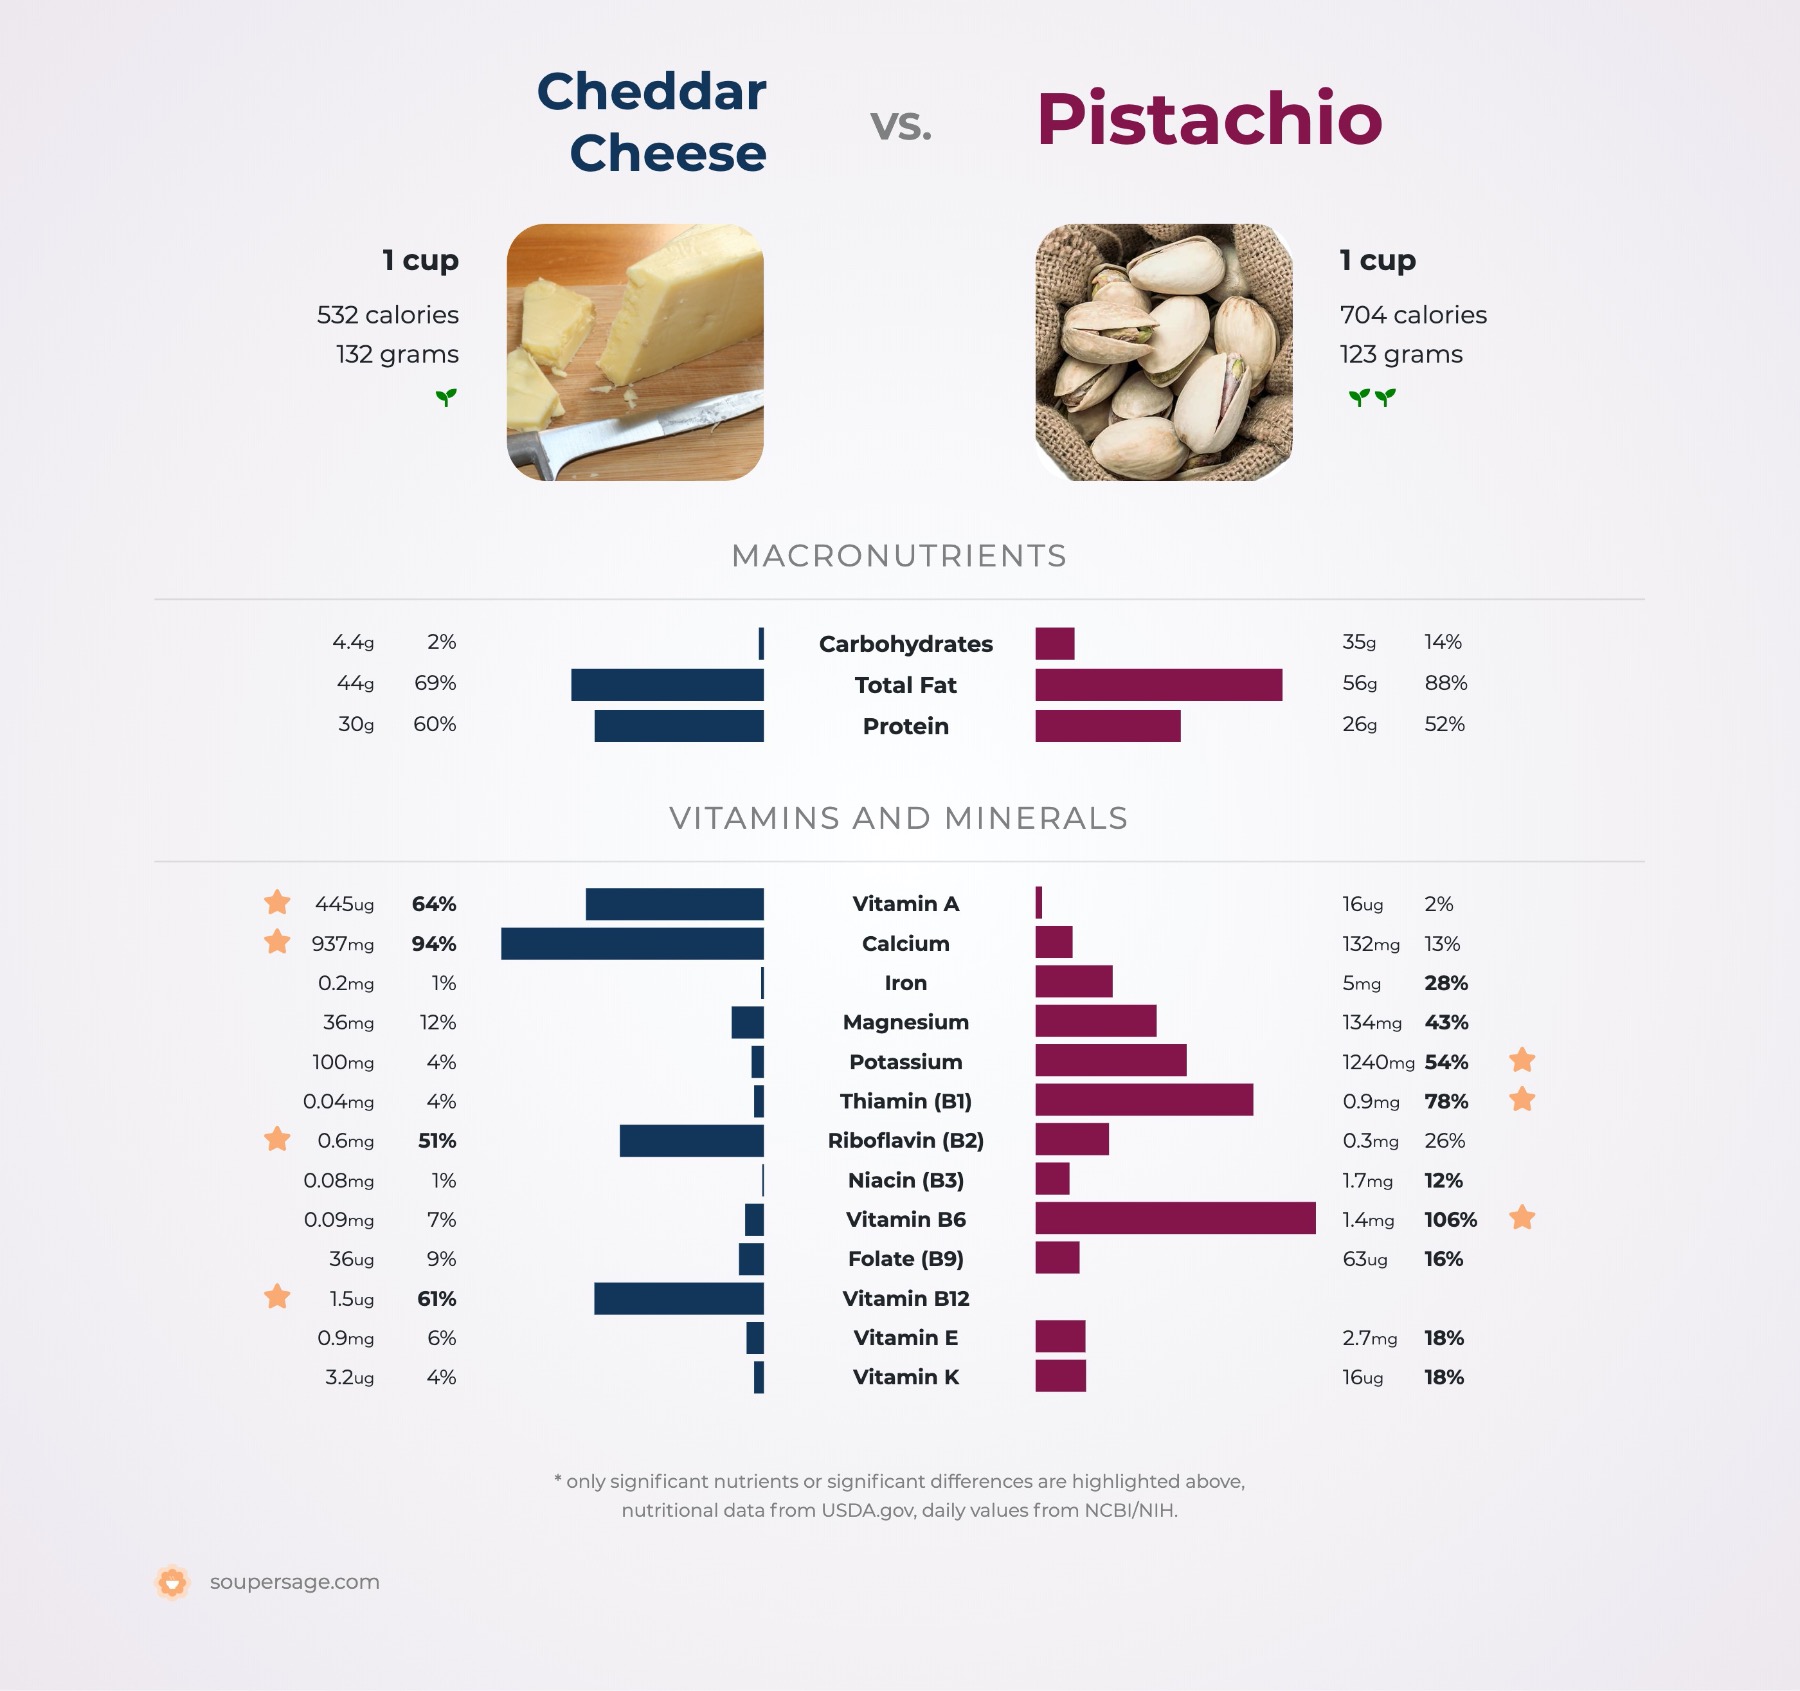 nutrition comparison of cheddar cheese vs. pistachio